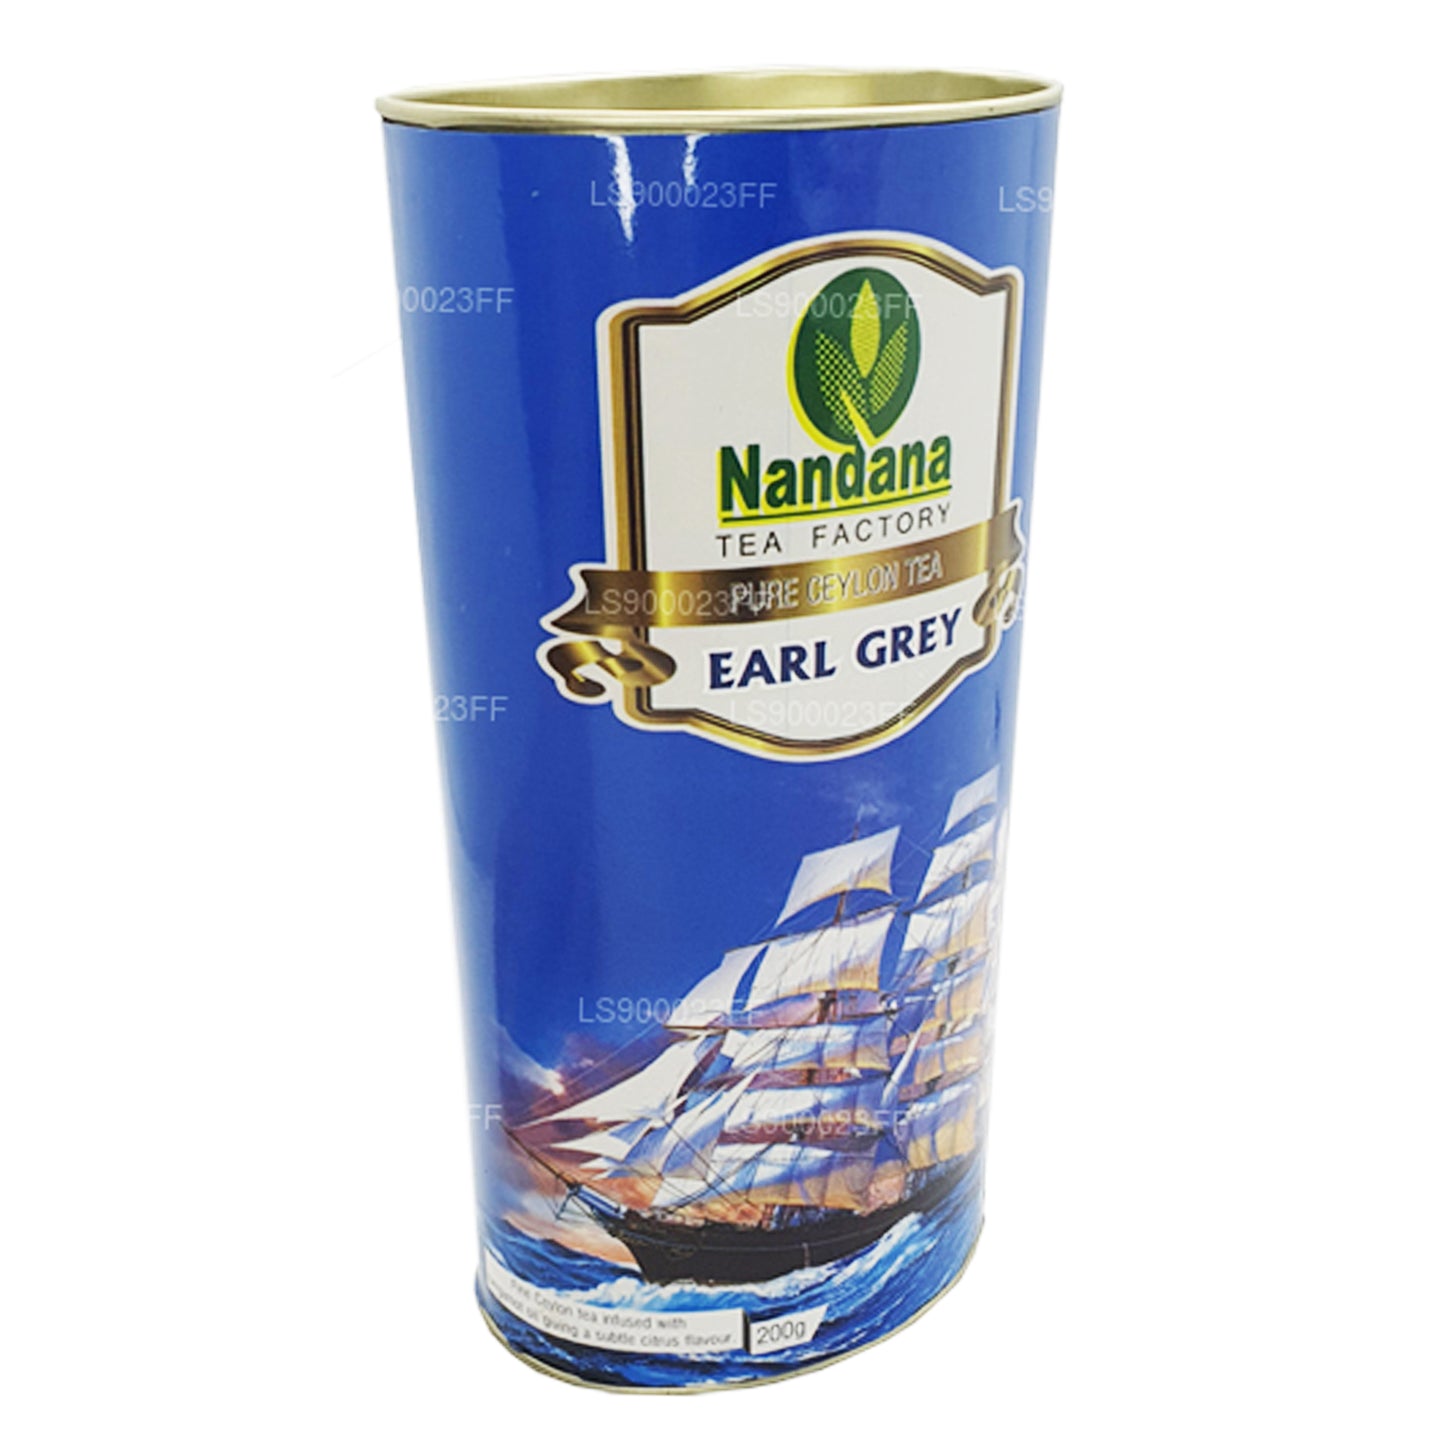 Nandana Earl Grey te (200 g)